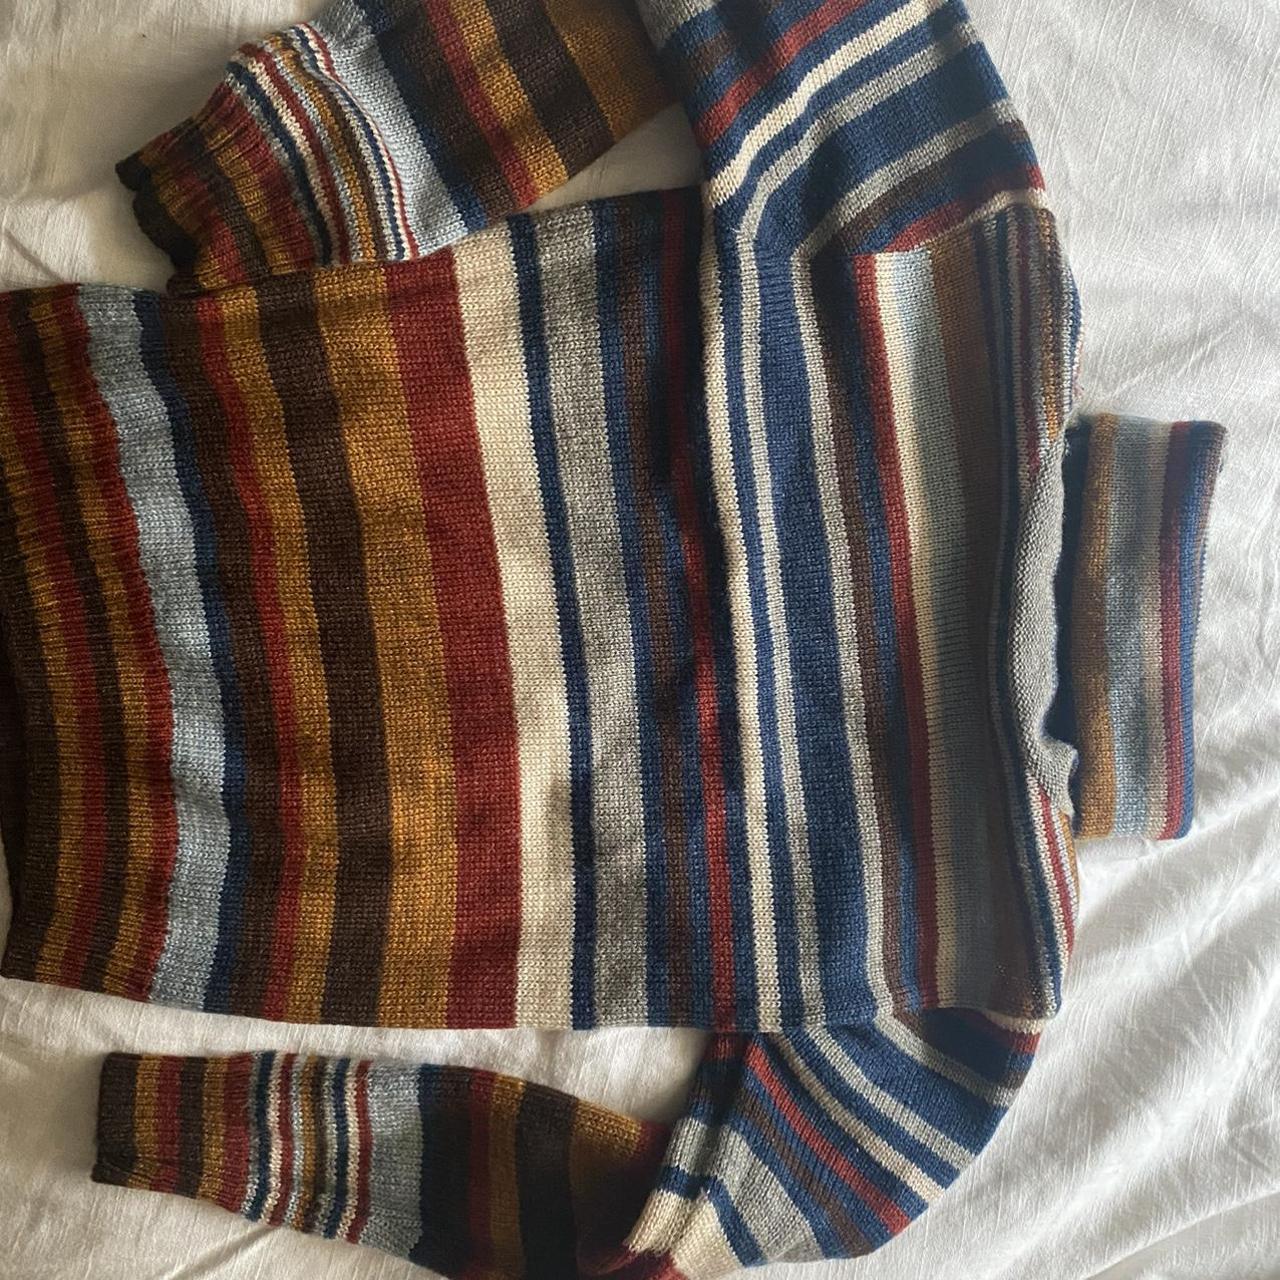 TRUE vintage 70s turtleneck sweater. Giving me... - Depop